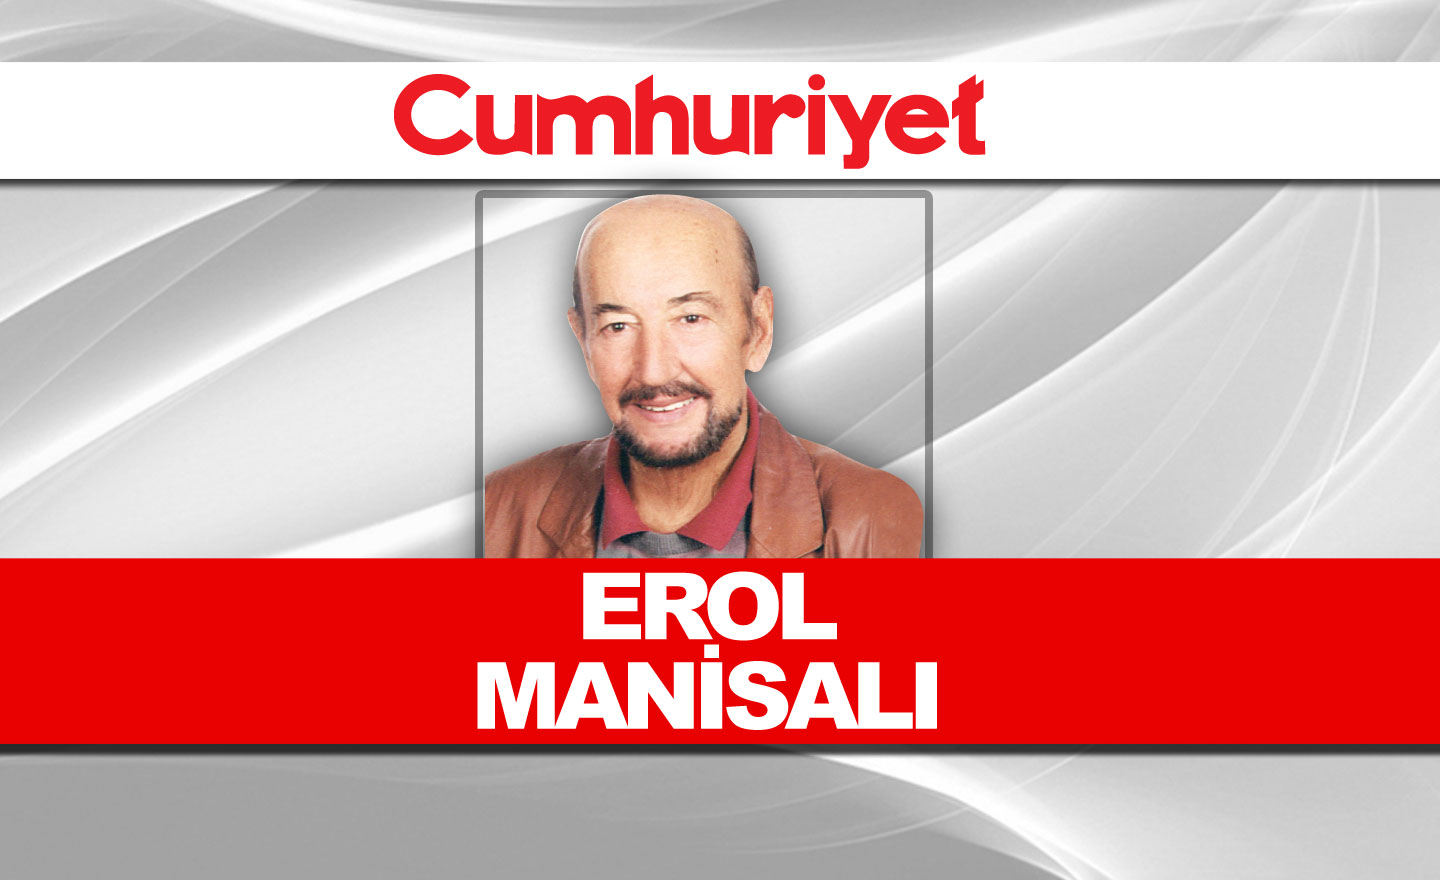 Είναι το κανάλι της Κωνσταντινούπολης εγγύηση εξουσίας;